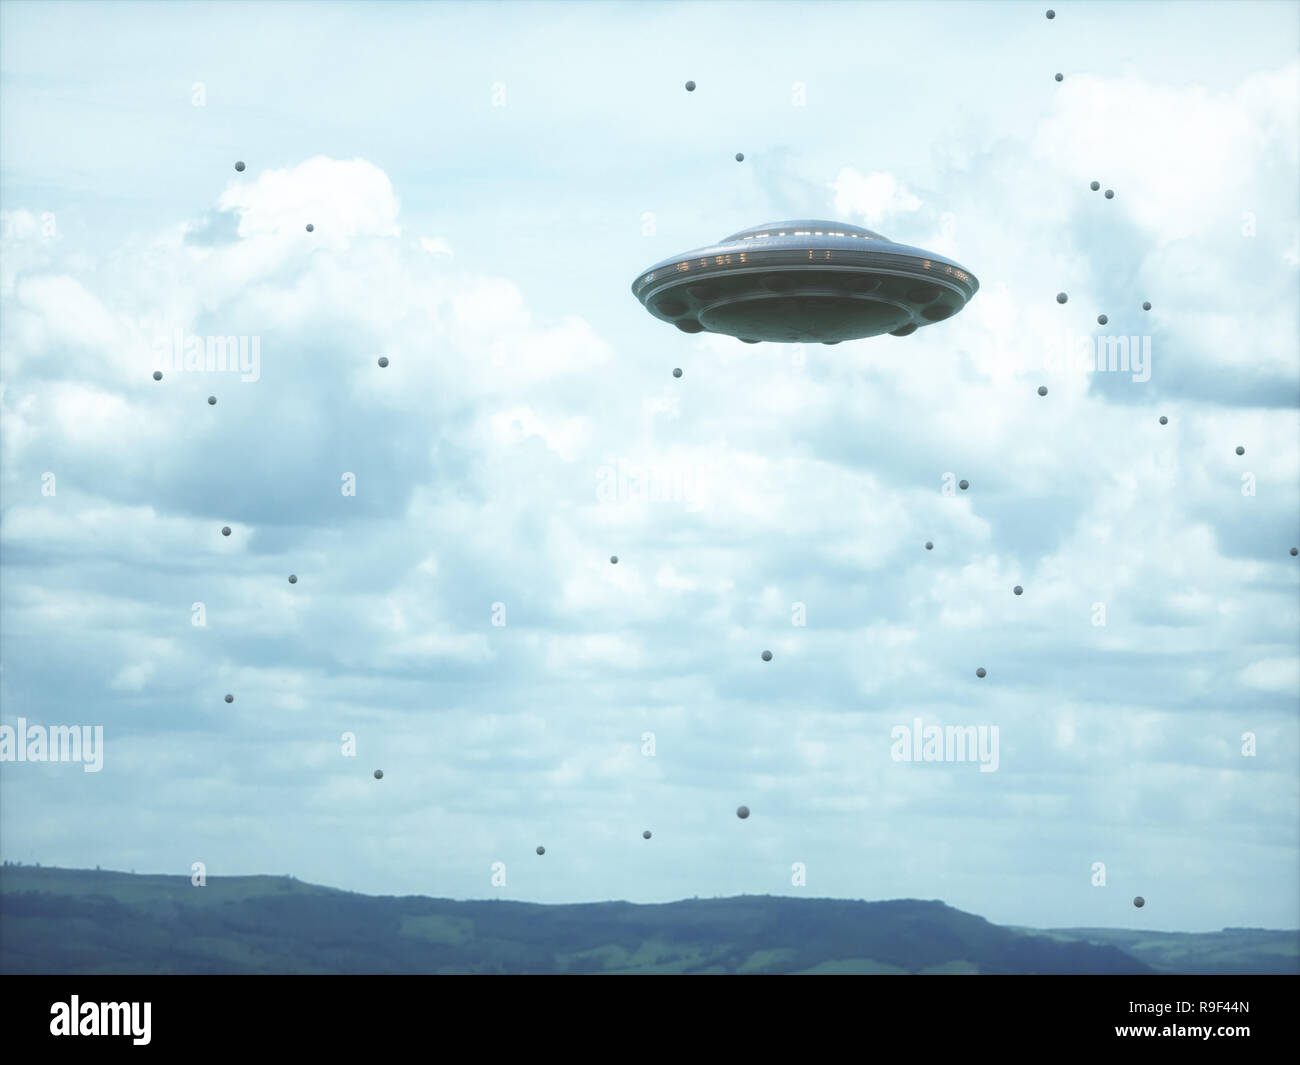 Oggetto Volante non Identificato nel cielo nuvoloso con strane sfere intorno a. Foto Stock